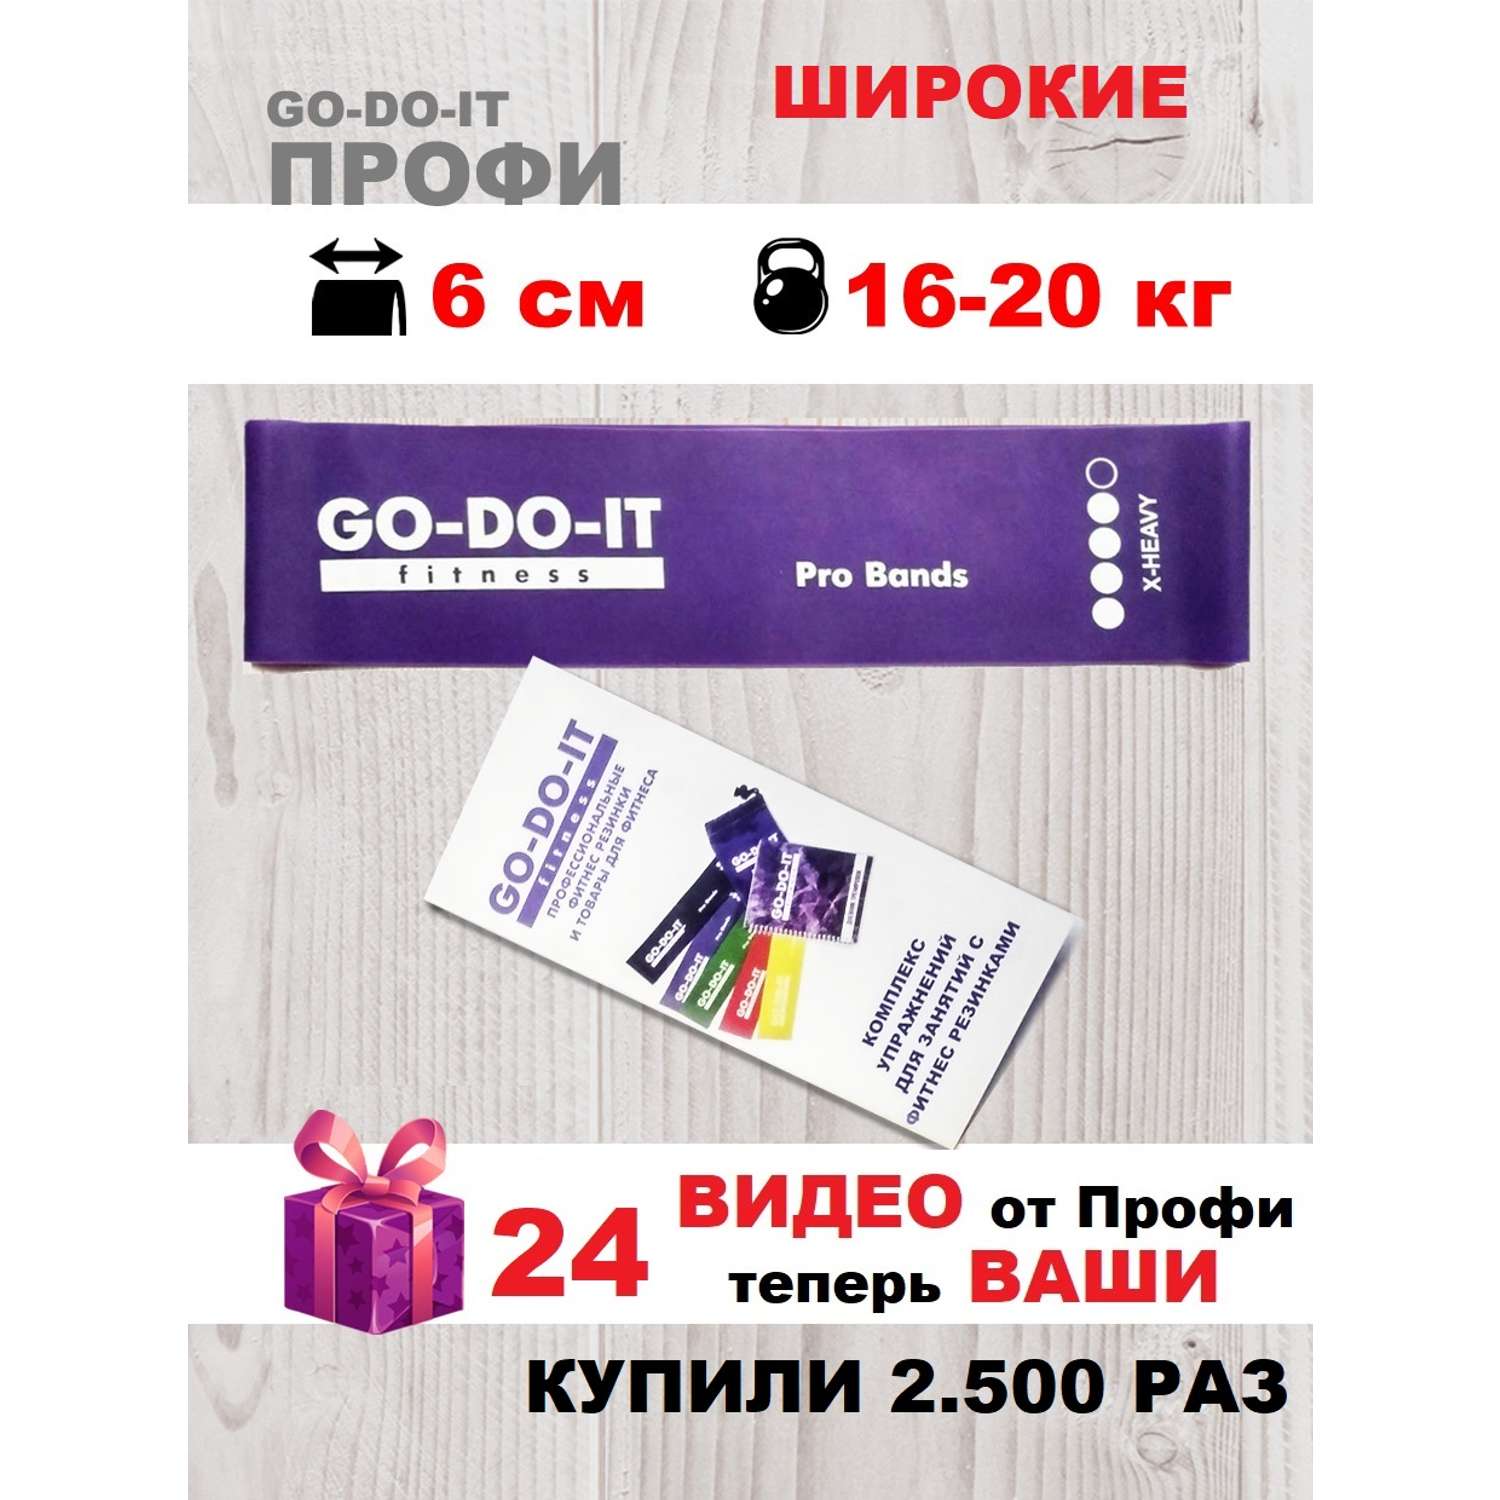 Резинка для фитнеса GO-DO-IT широкая PROFI фиолетовая 6 см 16-20 кг - фото 2